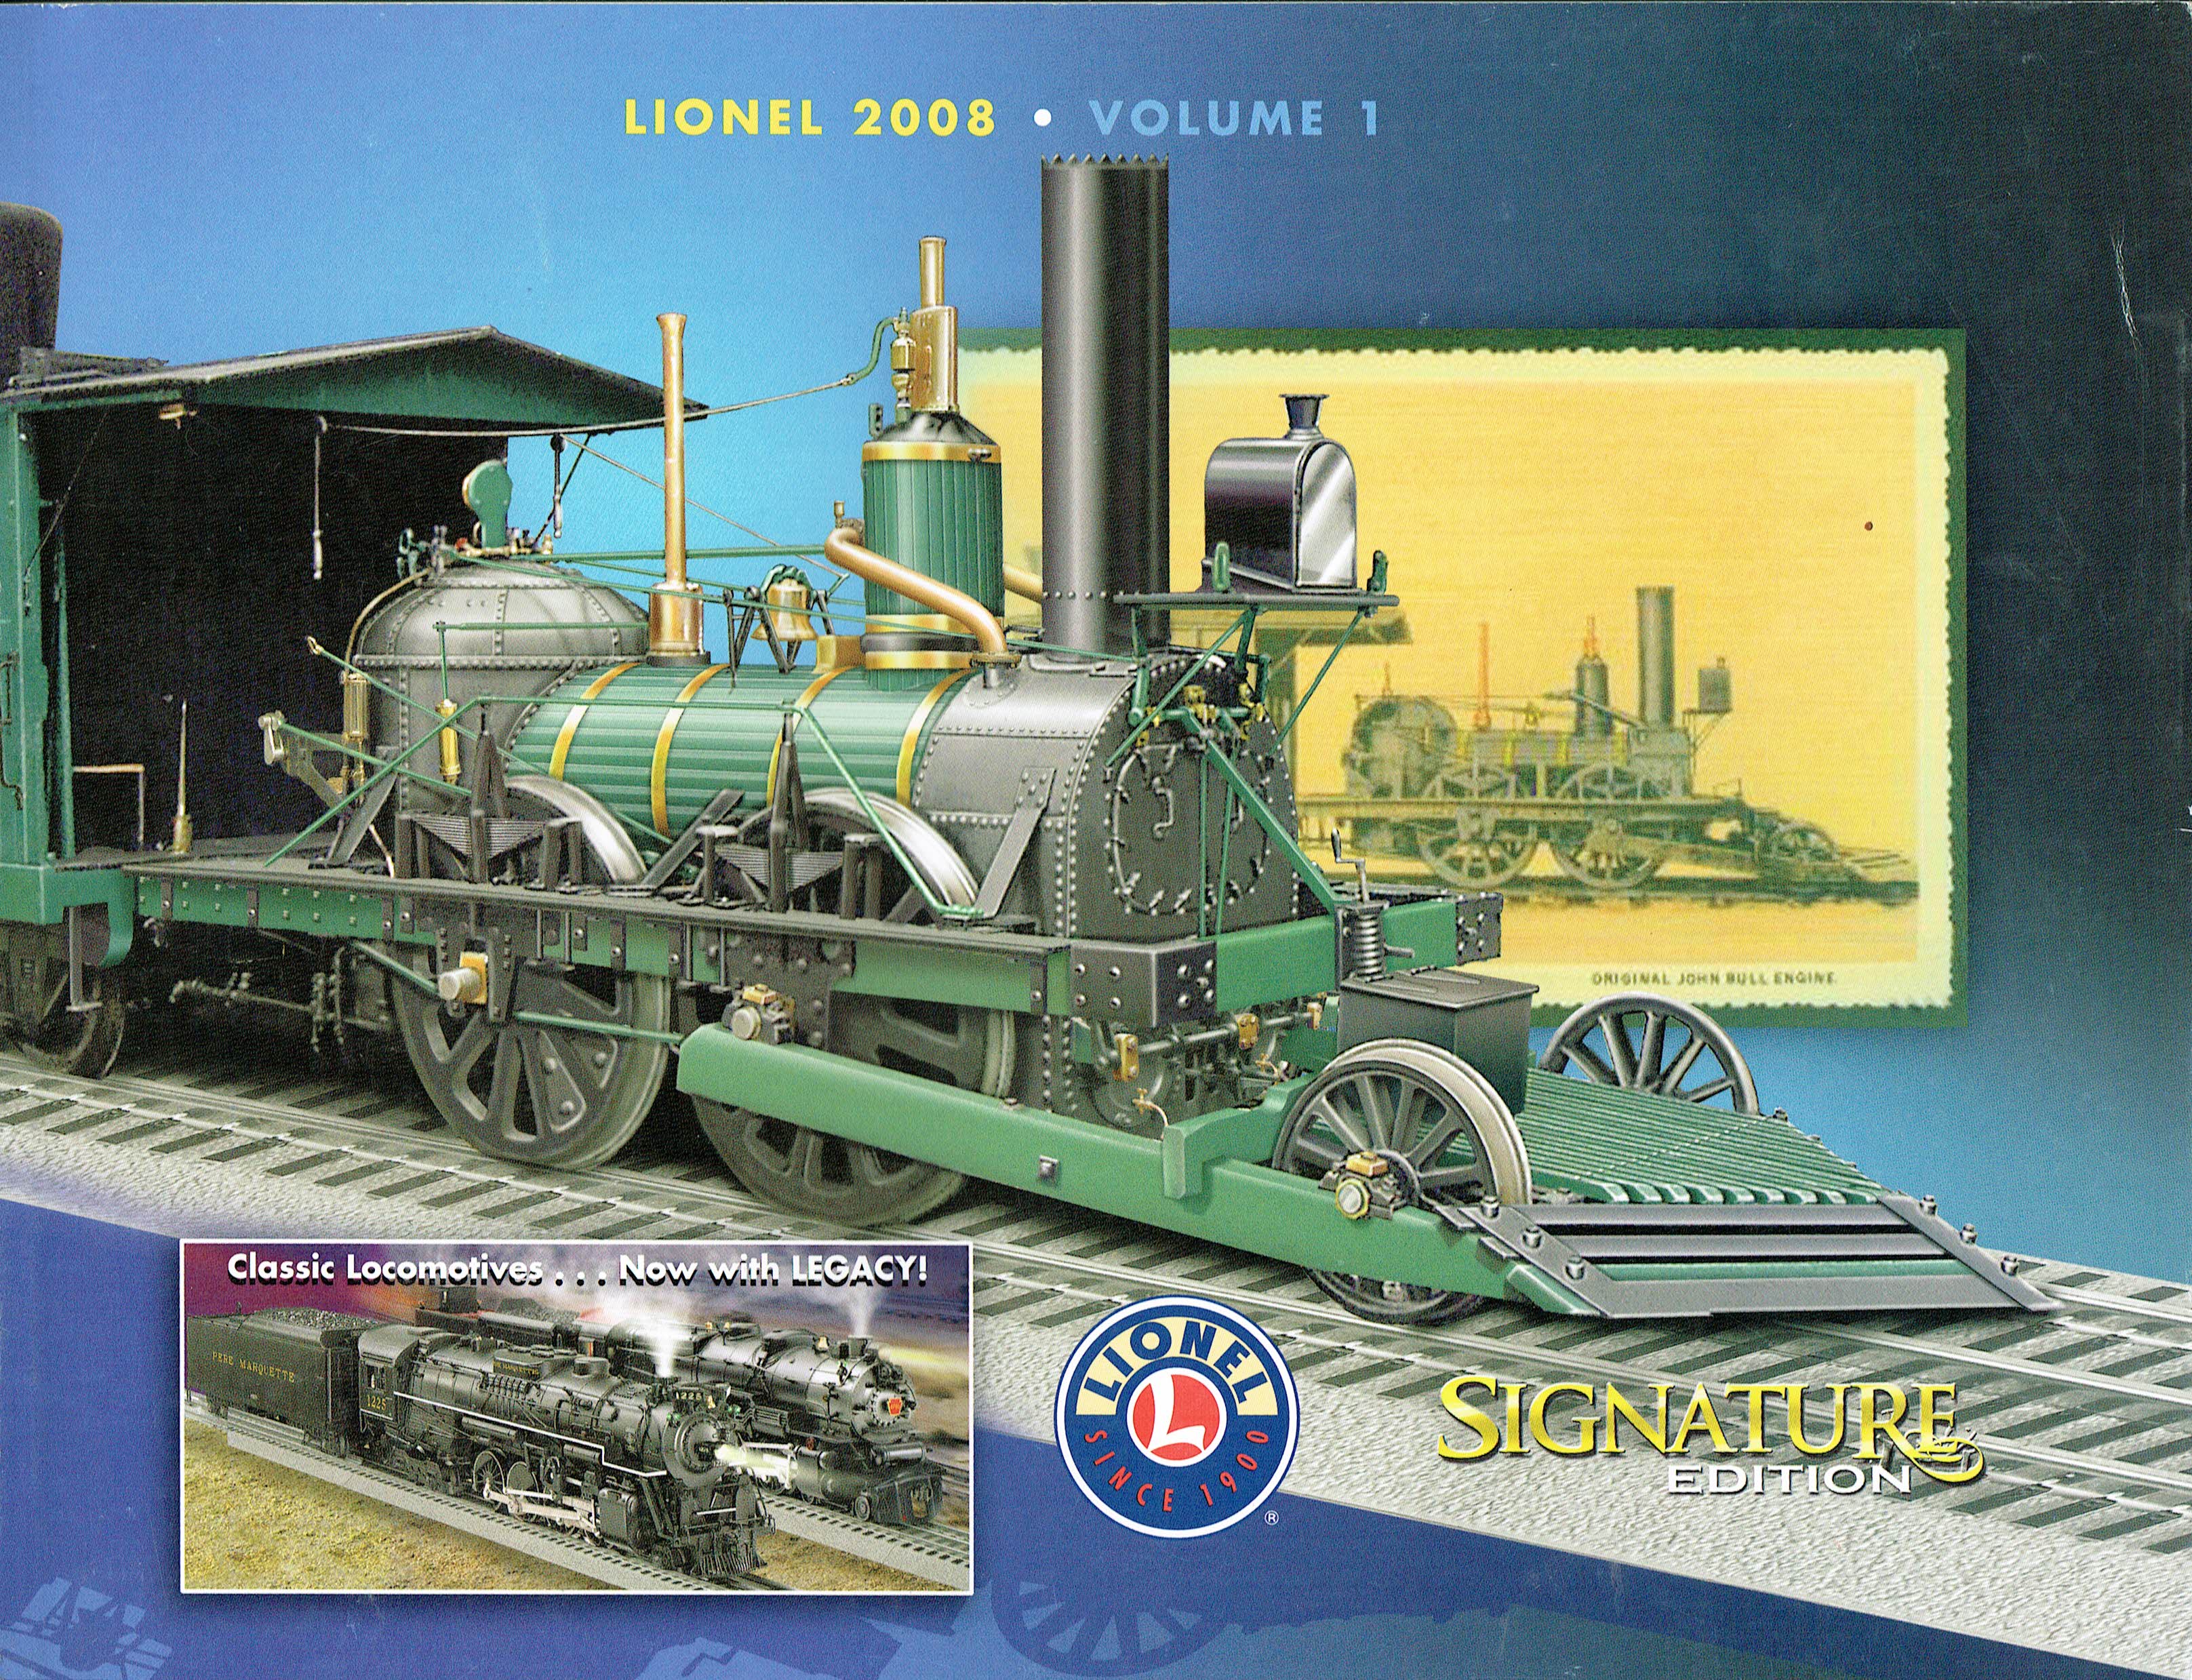 Lionel 2008 Volume 1 Signature Edition Catalog image